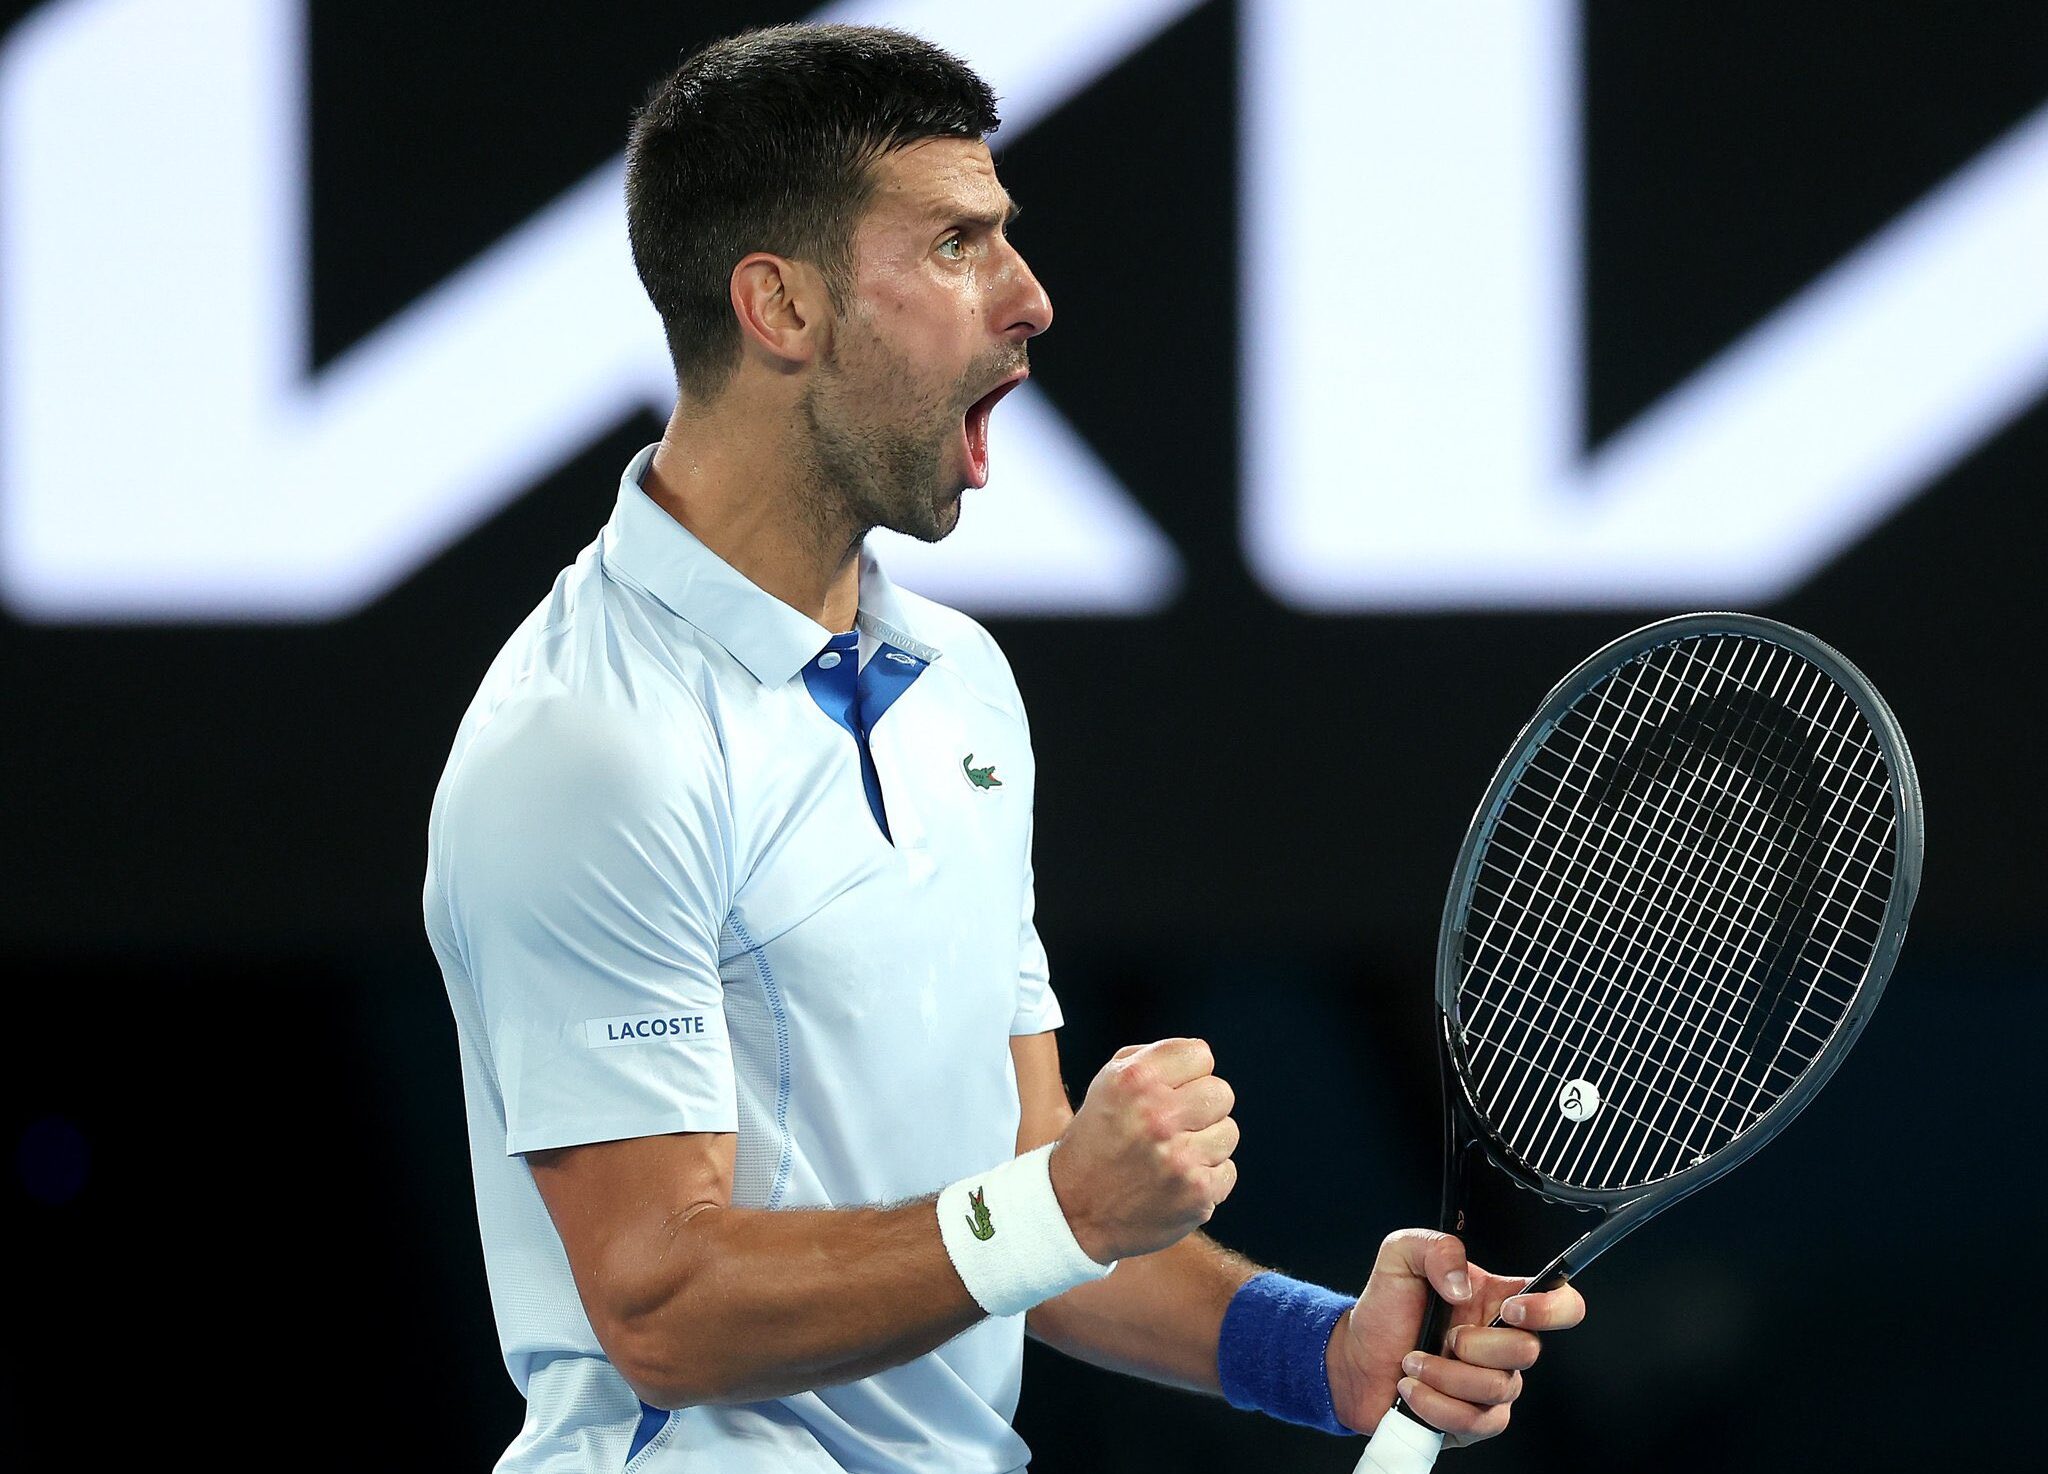 Djokovic desfiló en Australia con una aplastante victoria ante Mannarino